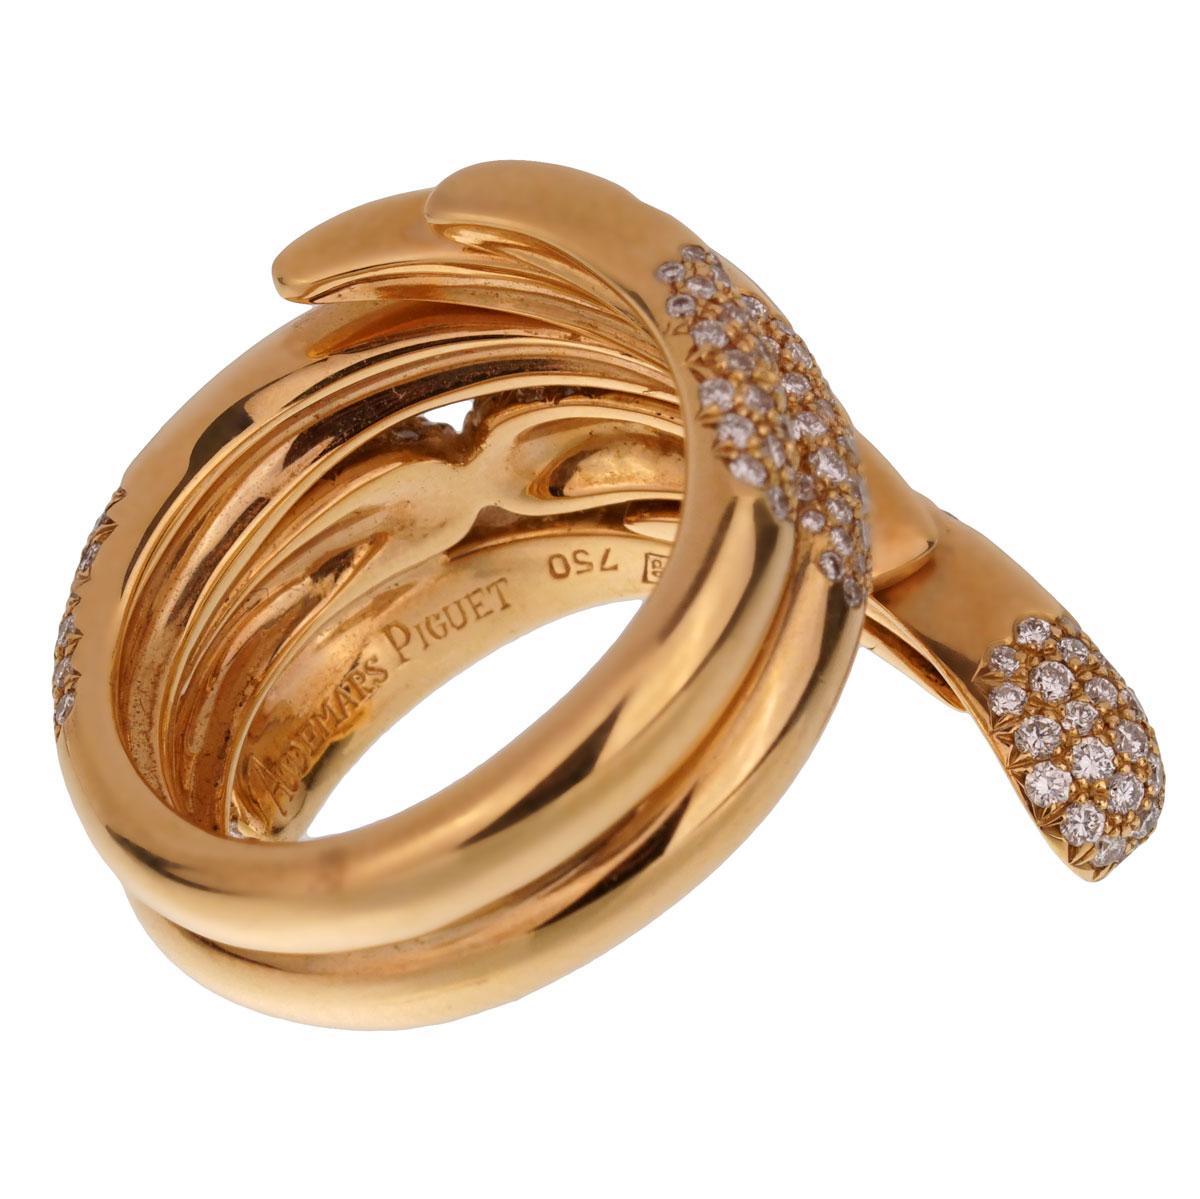 Brilliant Cut Audemars Piguet Rose Gold Diamond Cocktail Ring For Sale